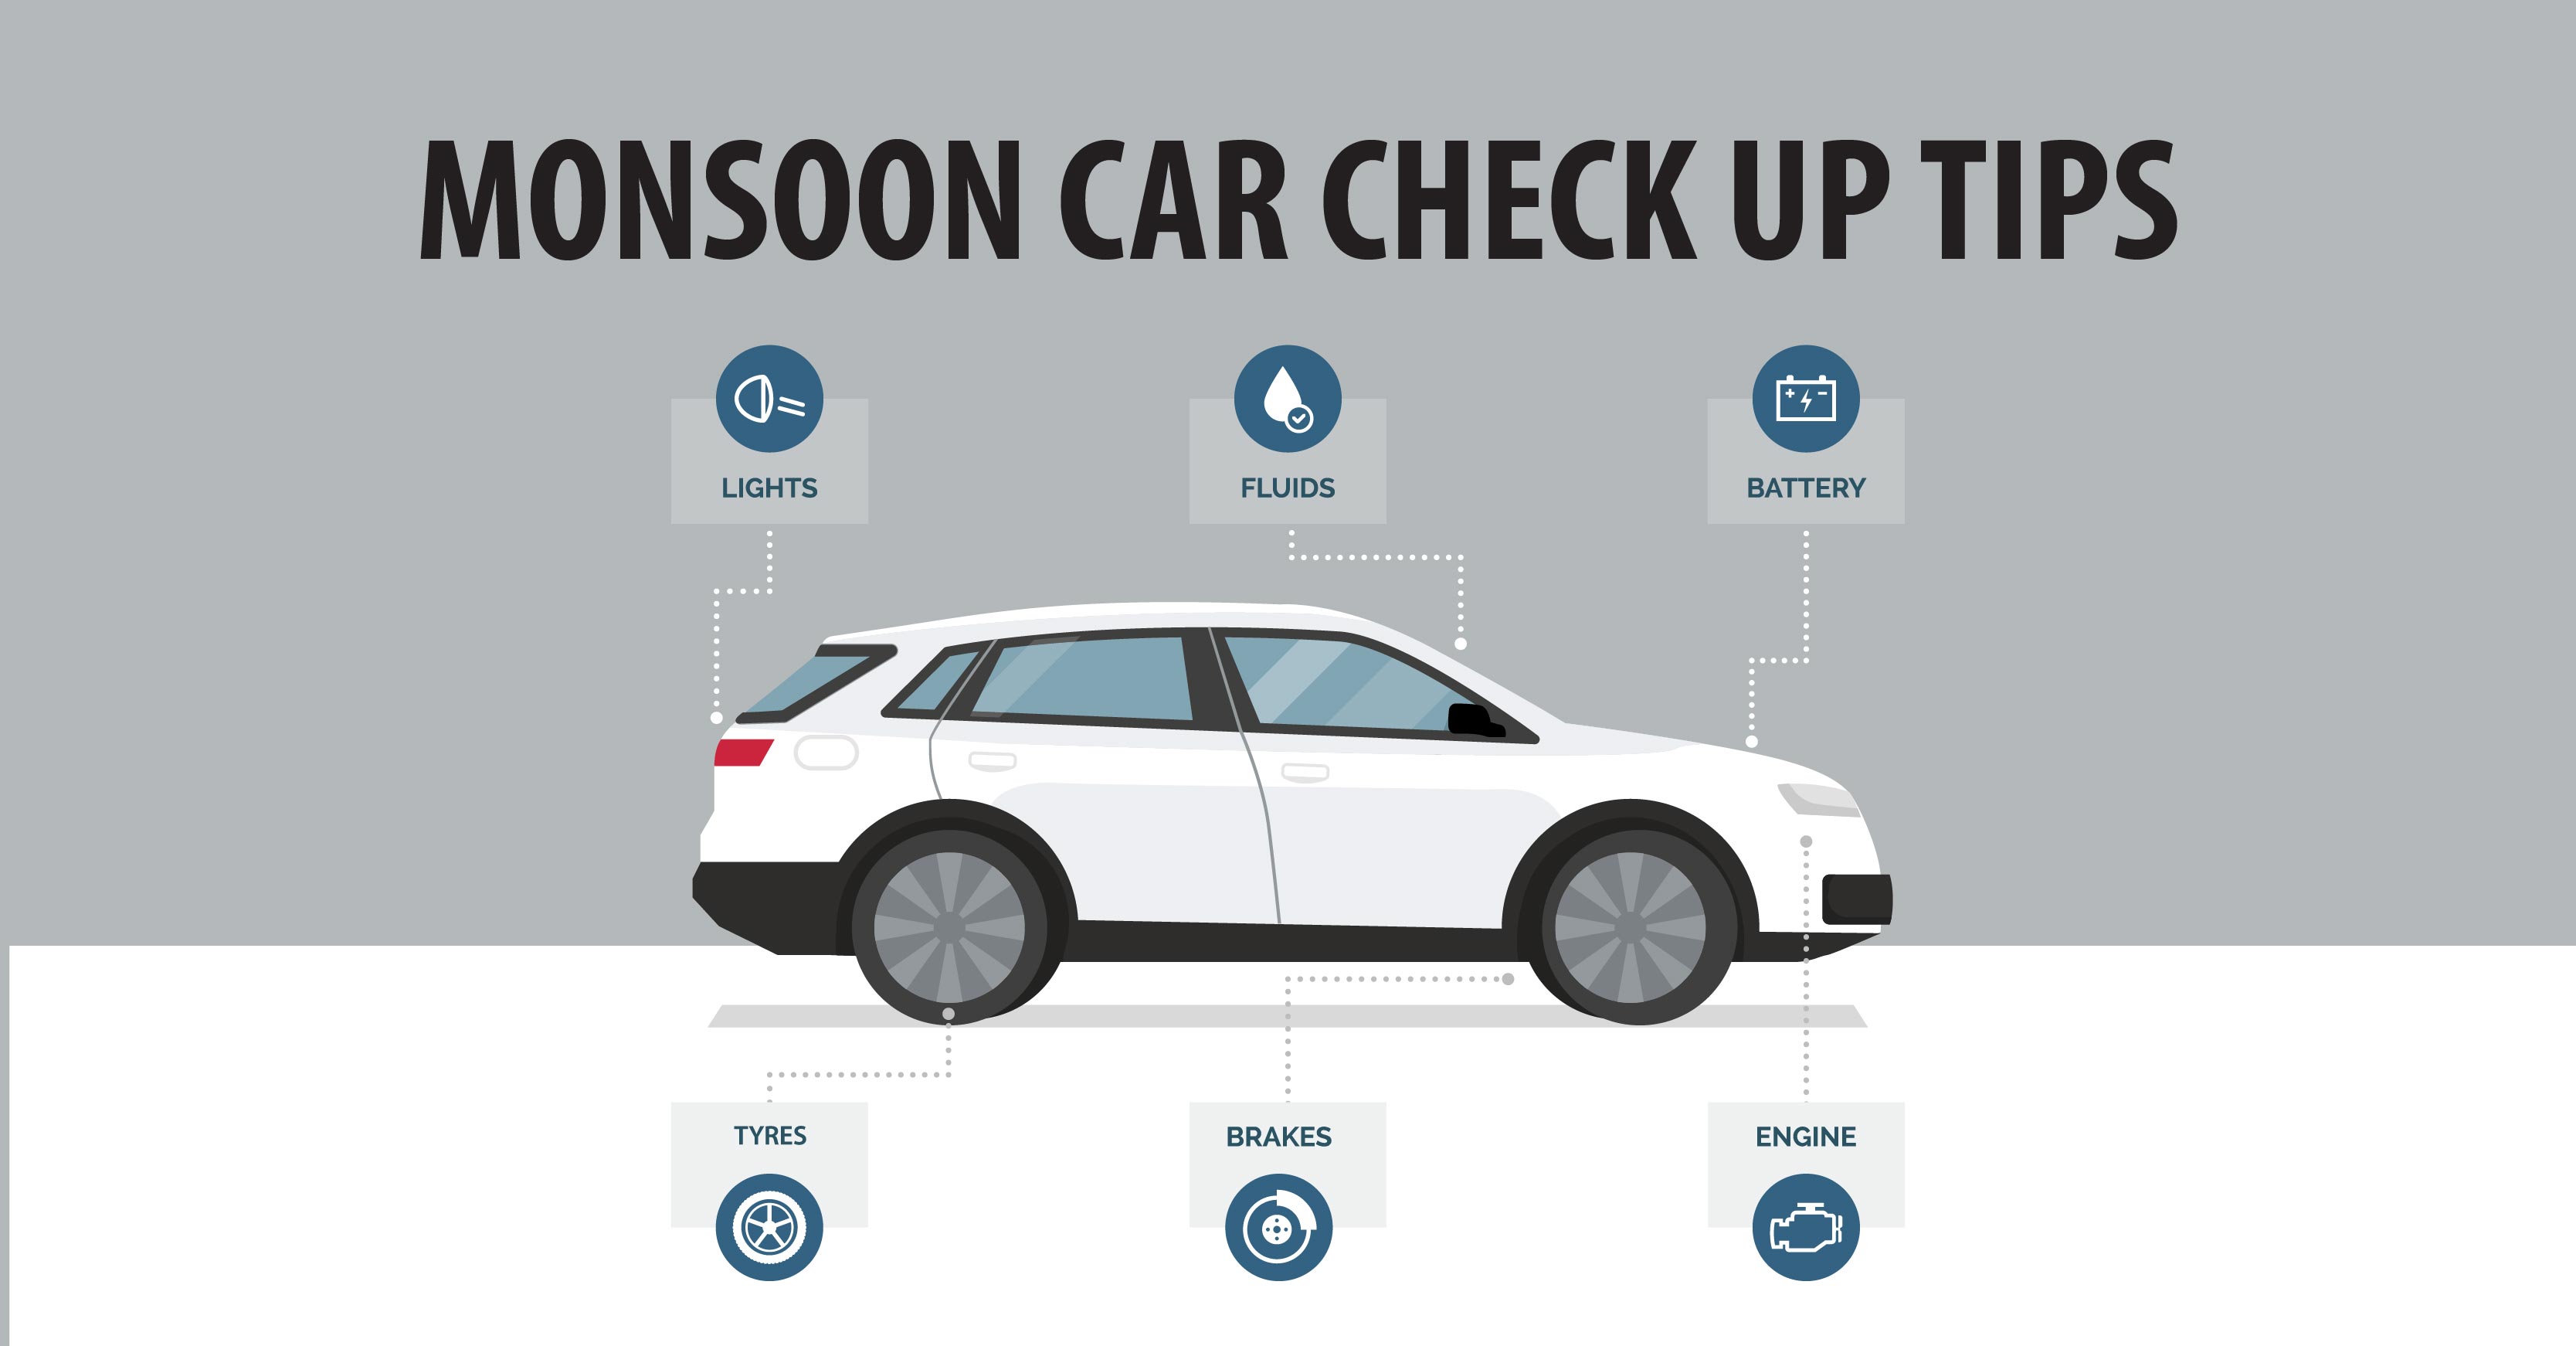 Monsoon Car Check Up Tips